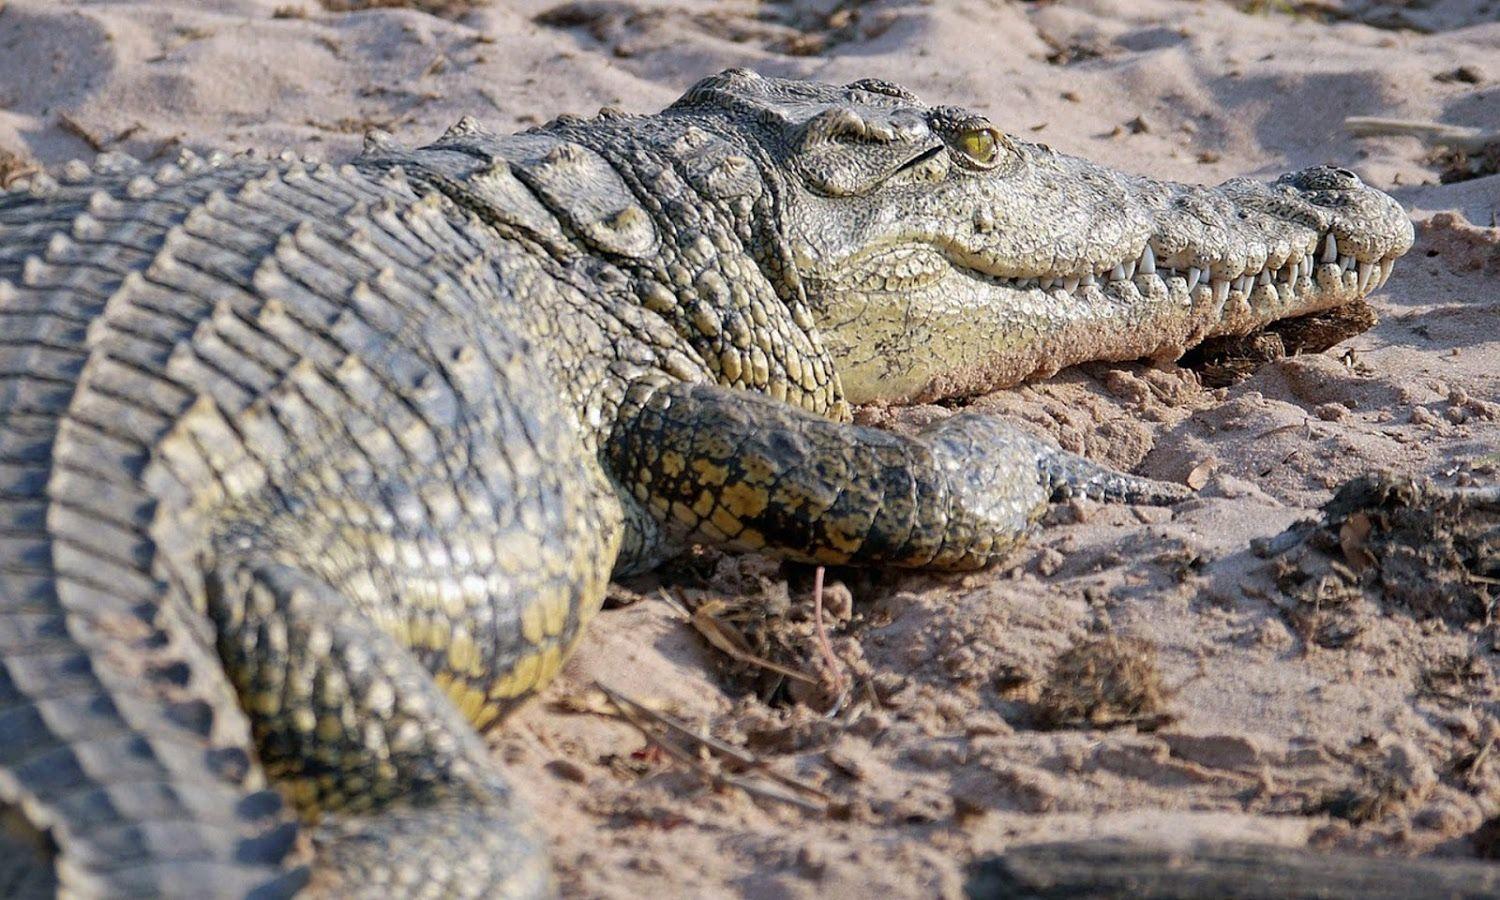 pics of krokodil users